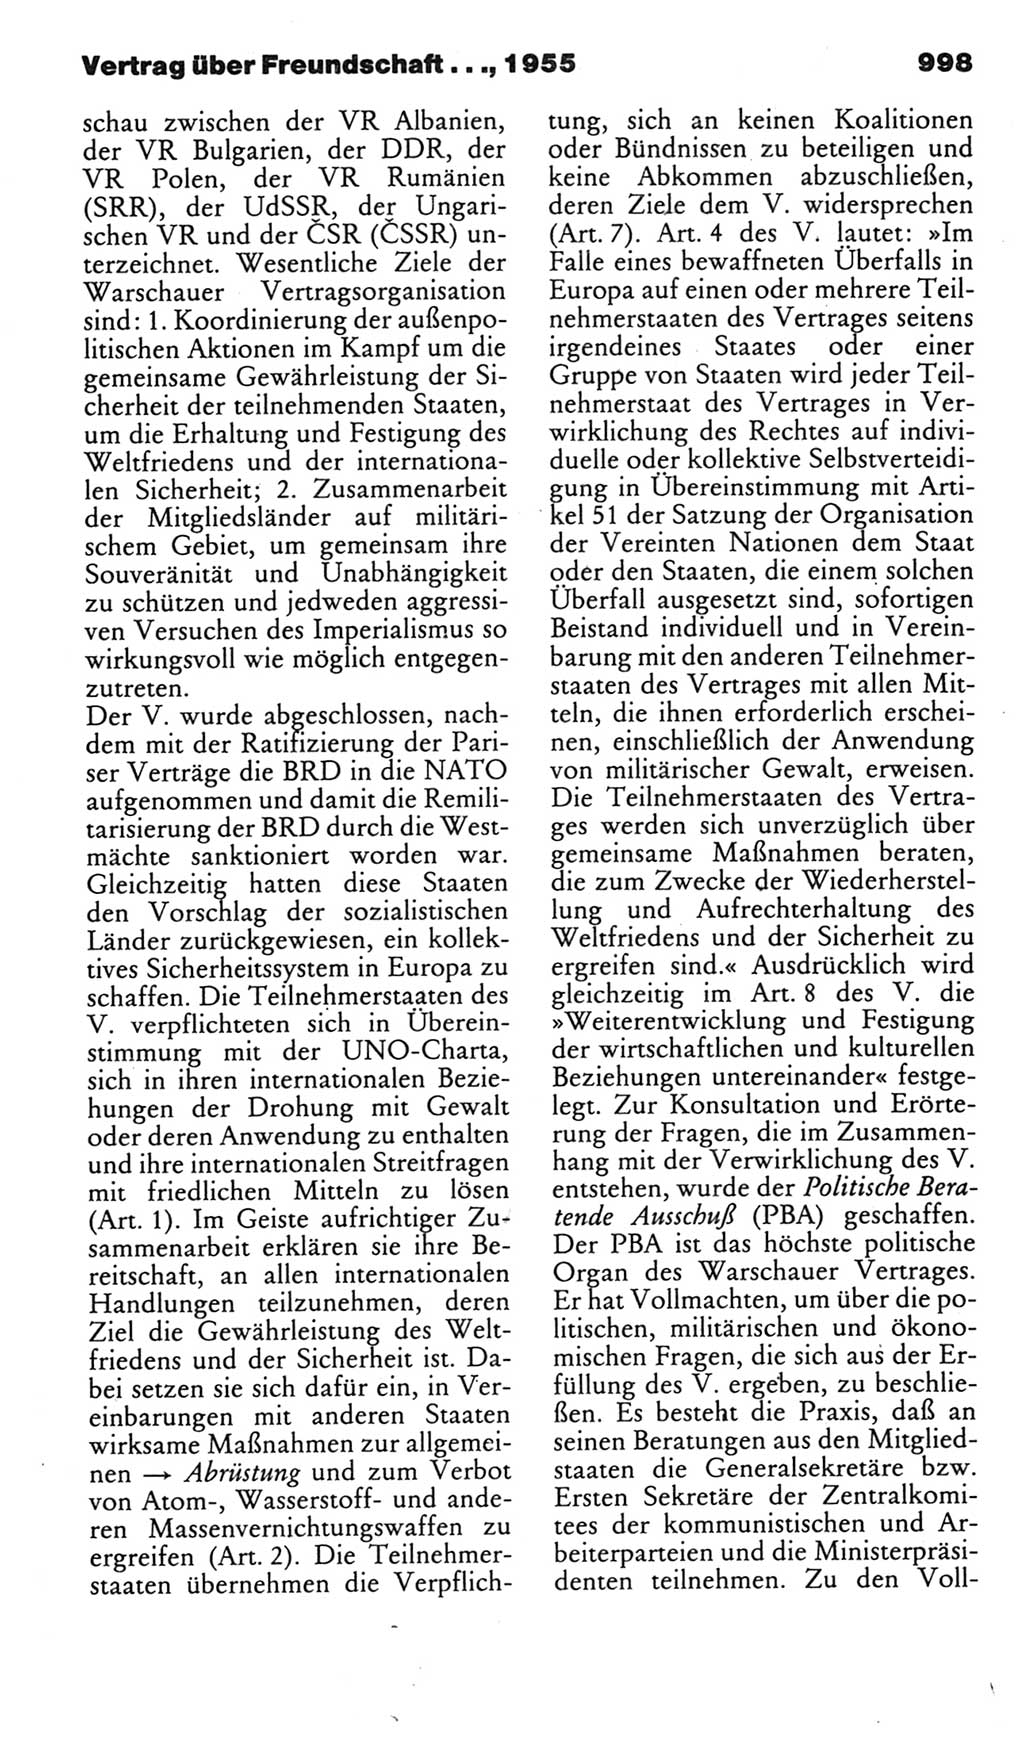 Kleines politisches Wörterbuch [Deutsche Demokratische Republik (DDR)] 1985, Seite 998 (Kl. pol. Wb. DDR 1985, S. 998)